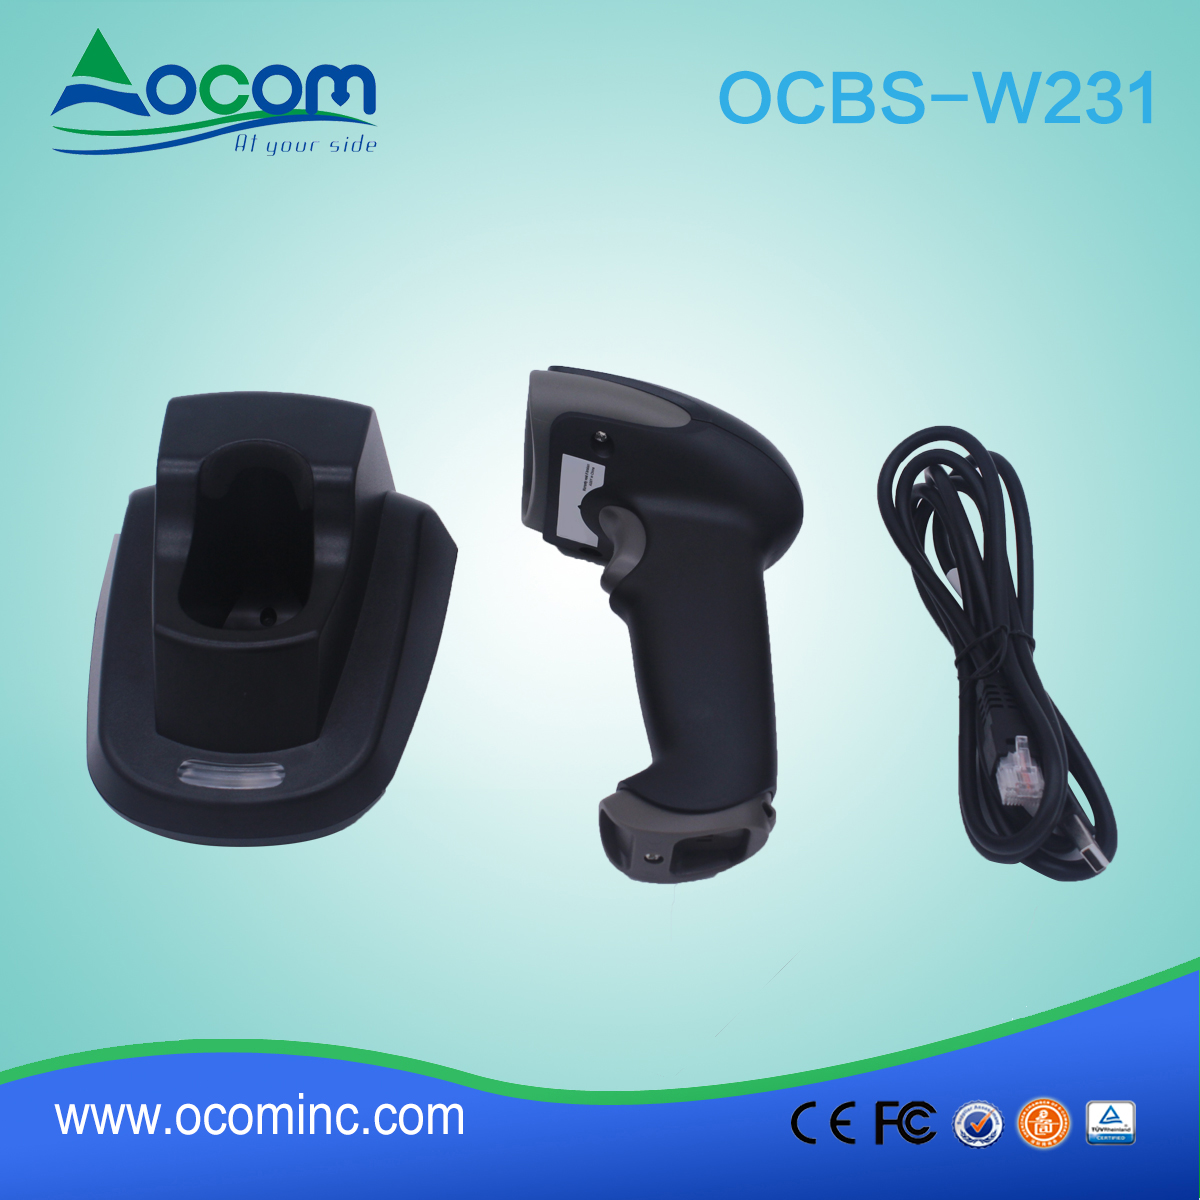 (OCBS-W231)坚固耐用的 433Mhz 2d 条码扫描仪与 craddle